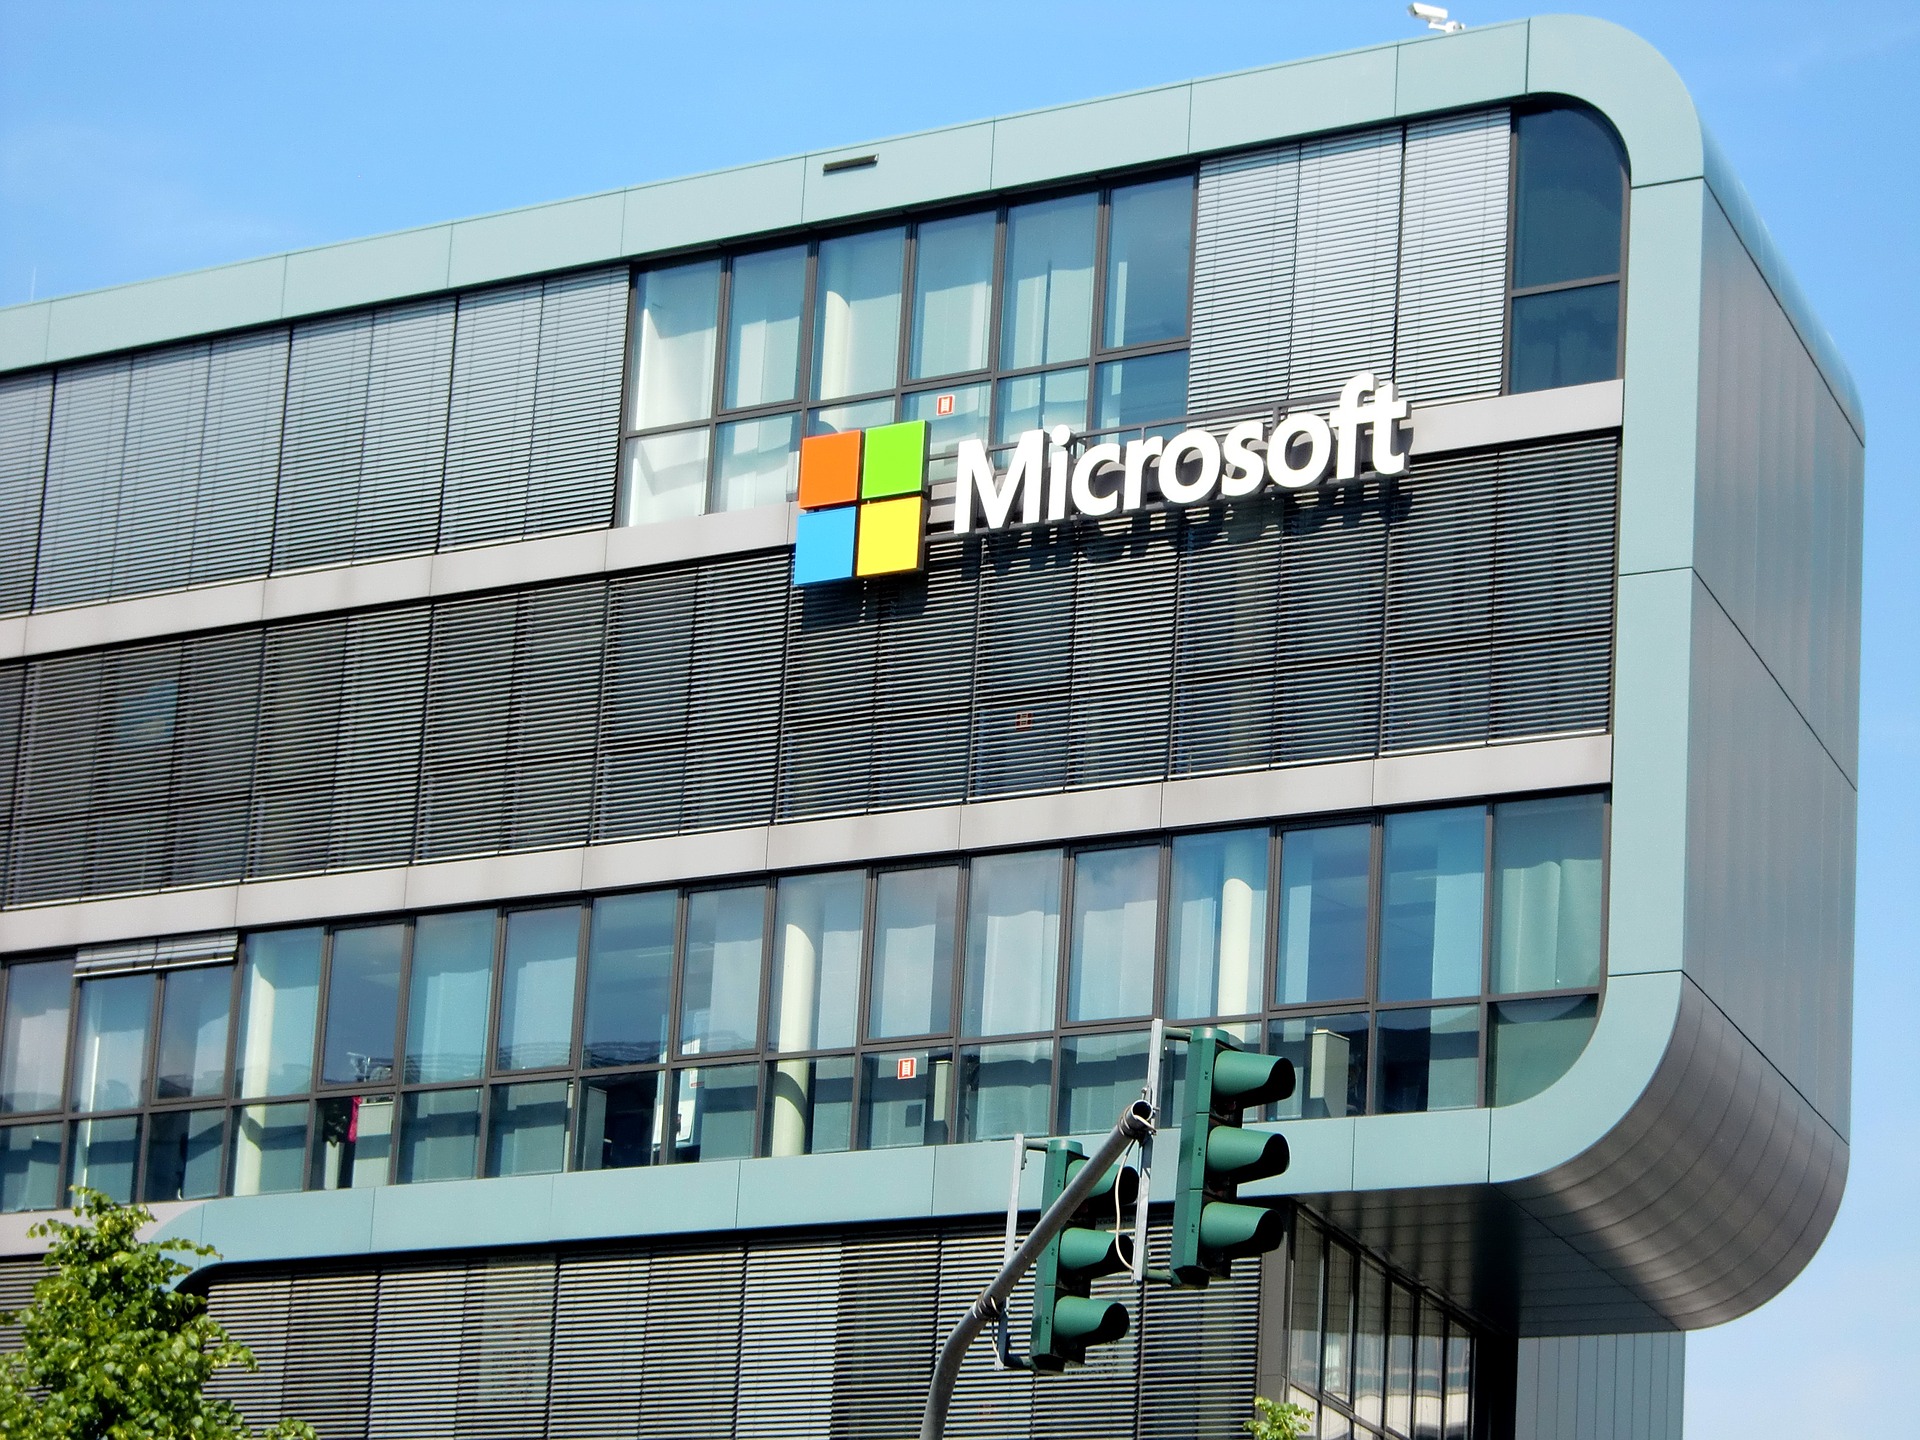 Microsoft optužen za diskriminaciju, uznemiravanje i silovanje zaposlenica